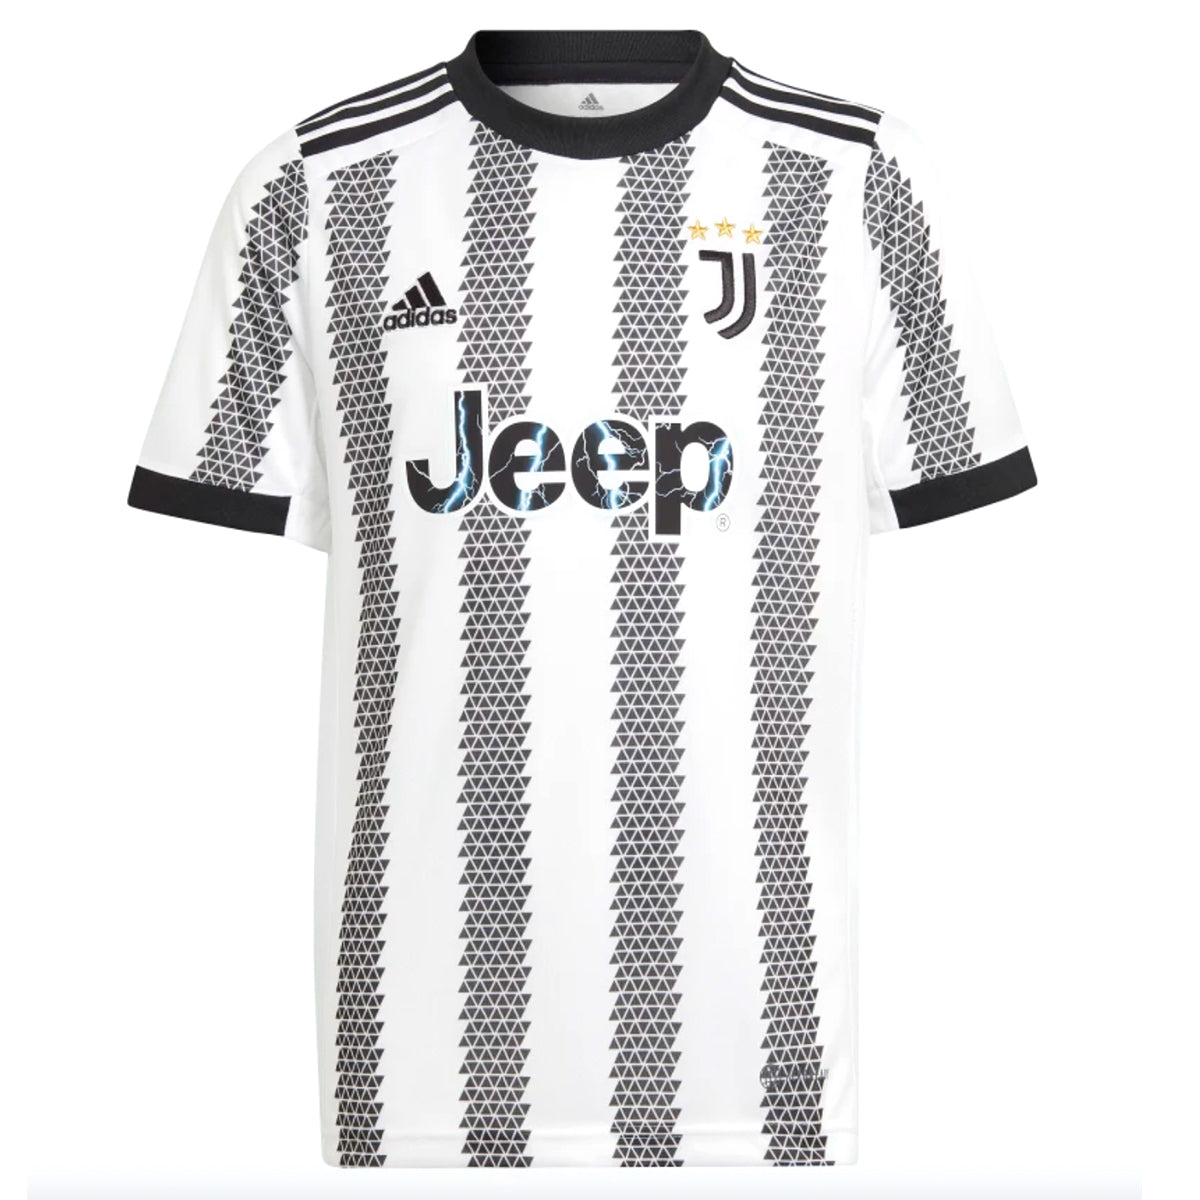 adidas Youth Juventus 22/23 Home Jersey | HB0439 Jersey Adidas Youth Medium White/Black 